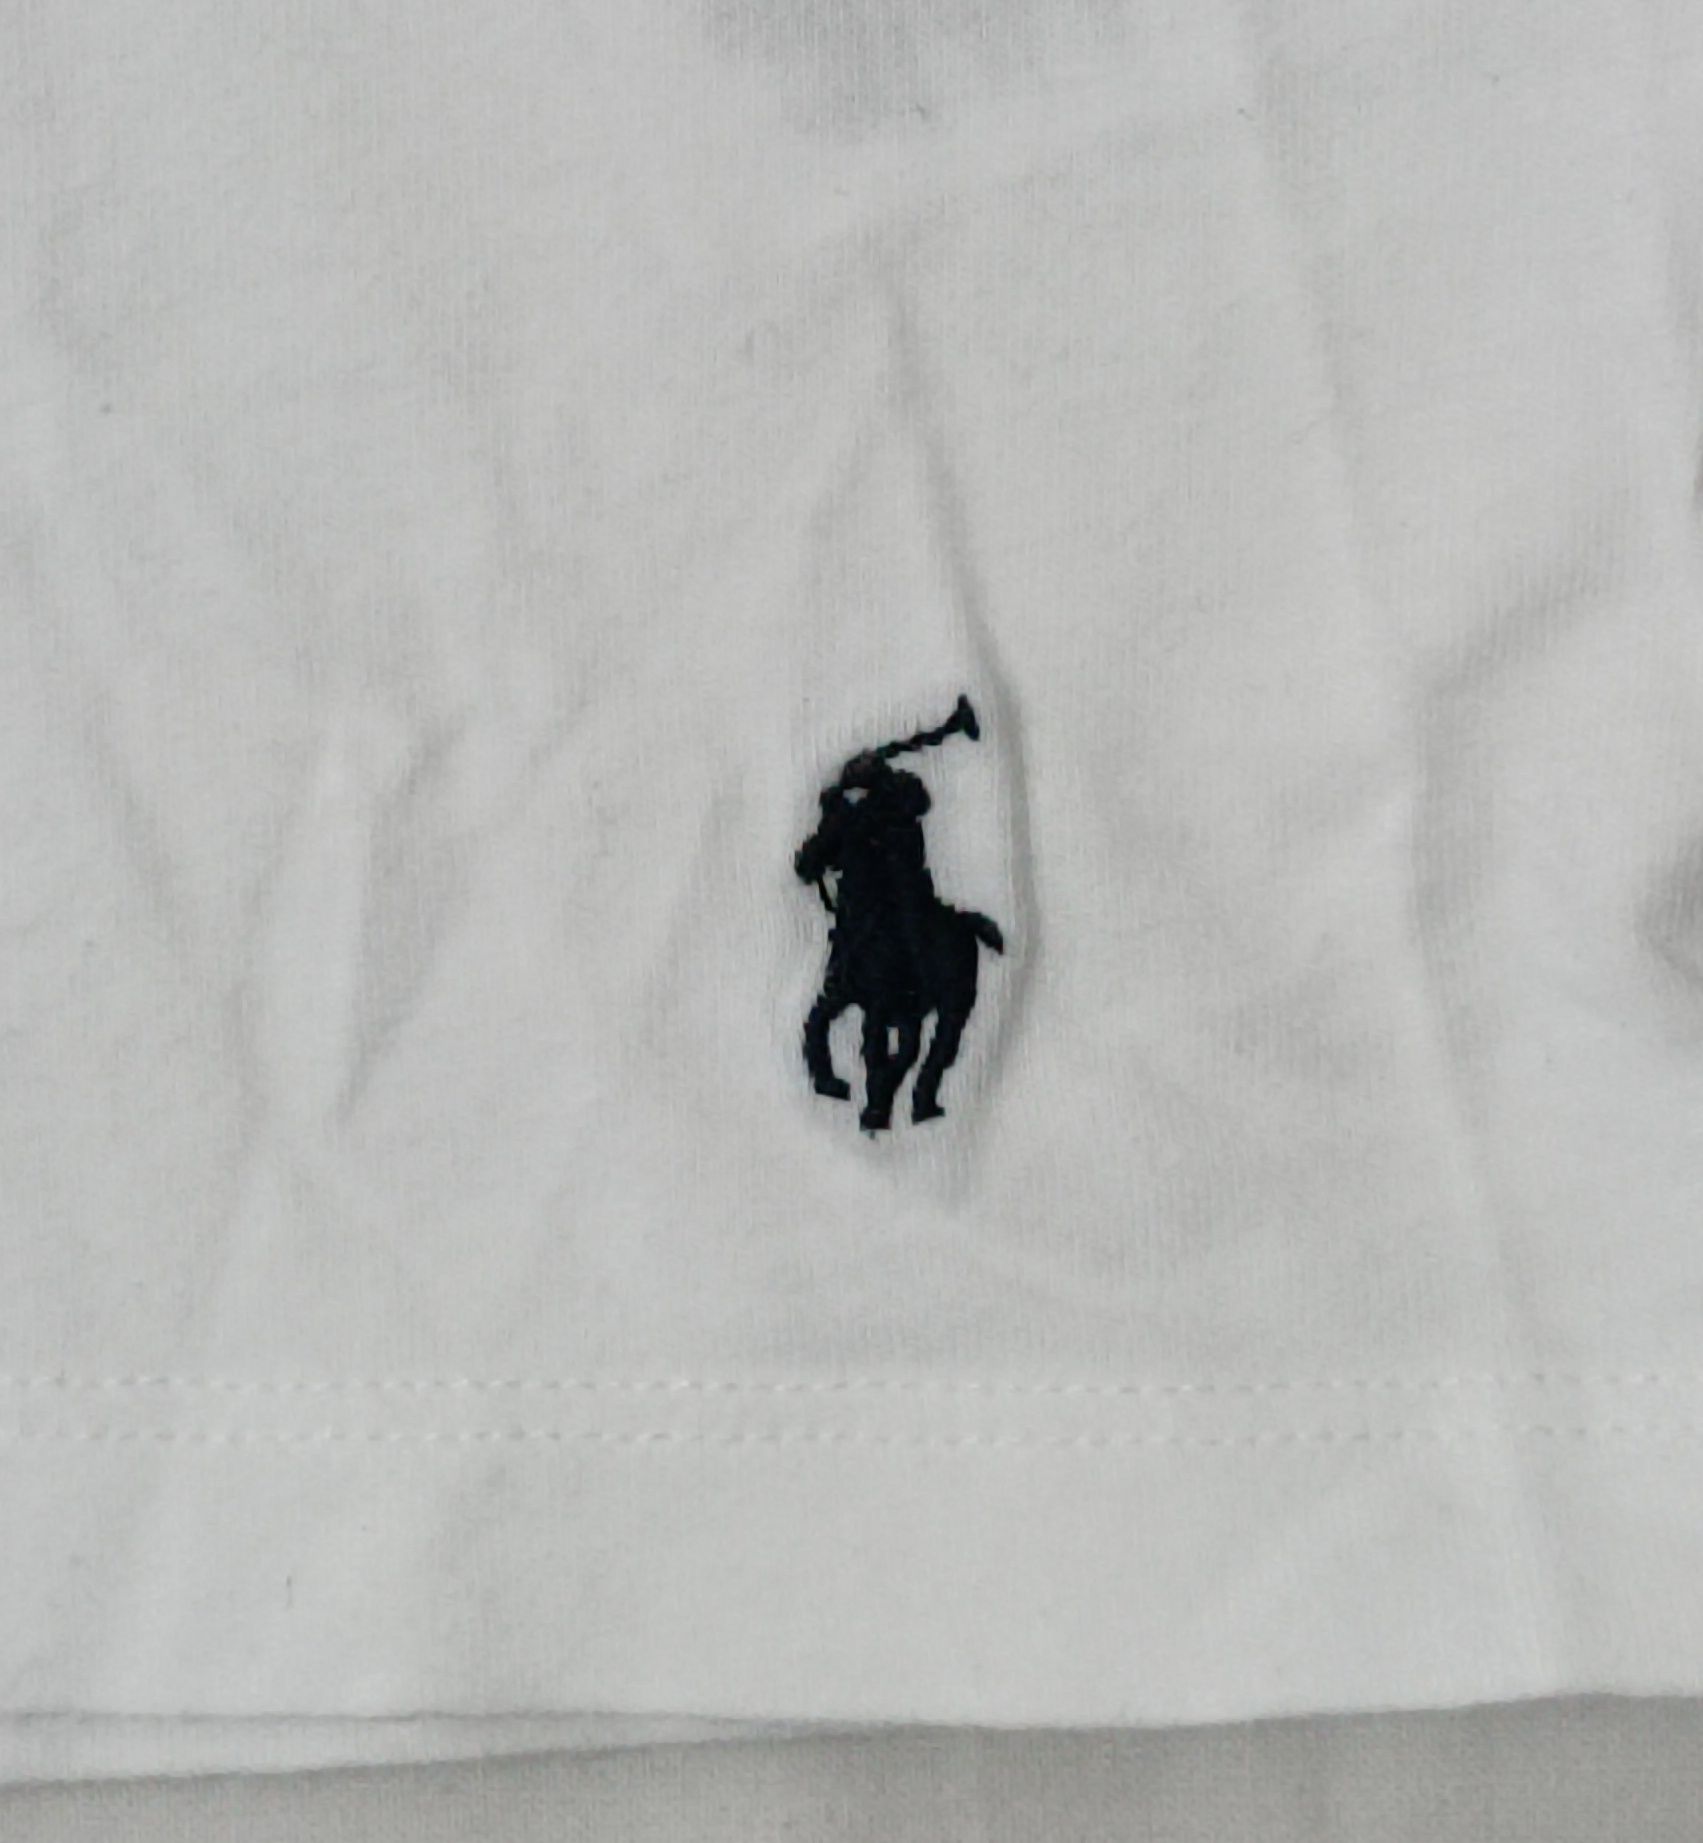 POLO Ralph Lauren оригинална блуза M памучна фланелка